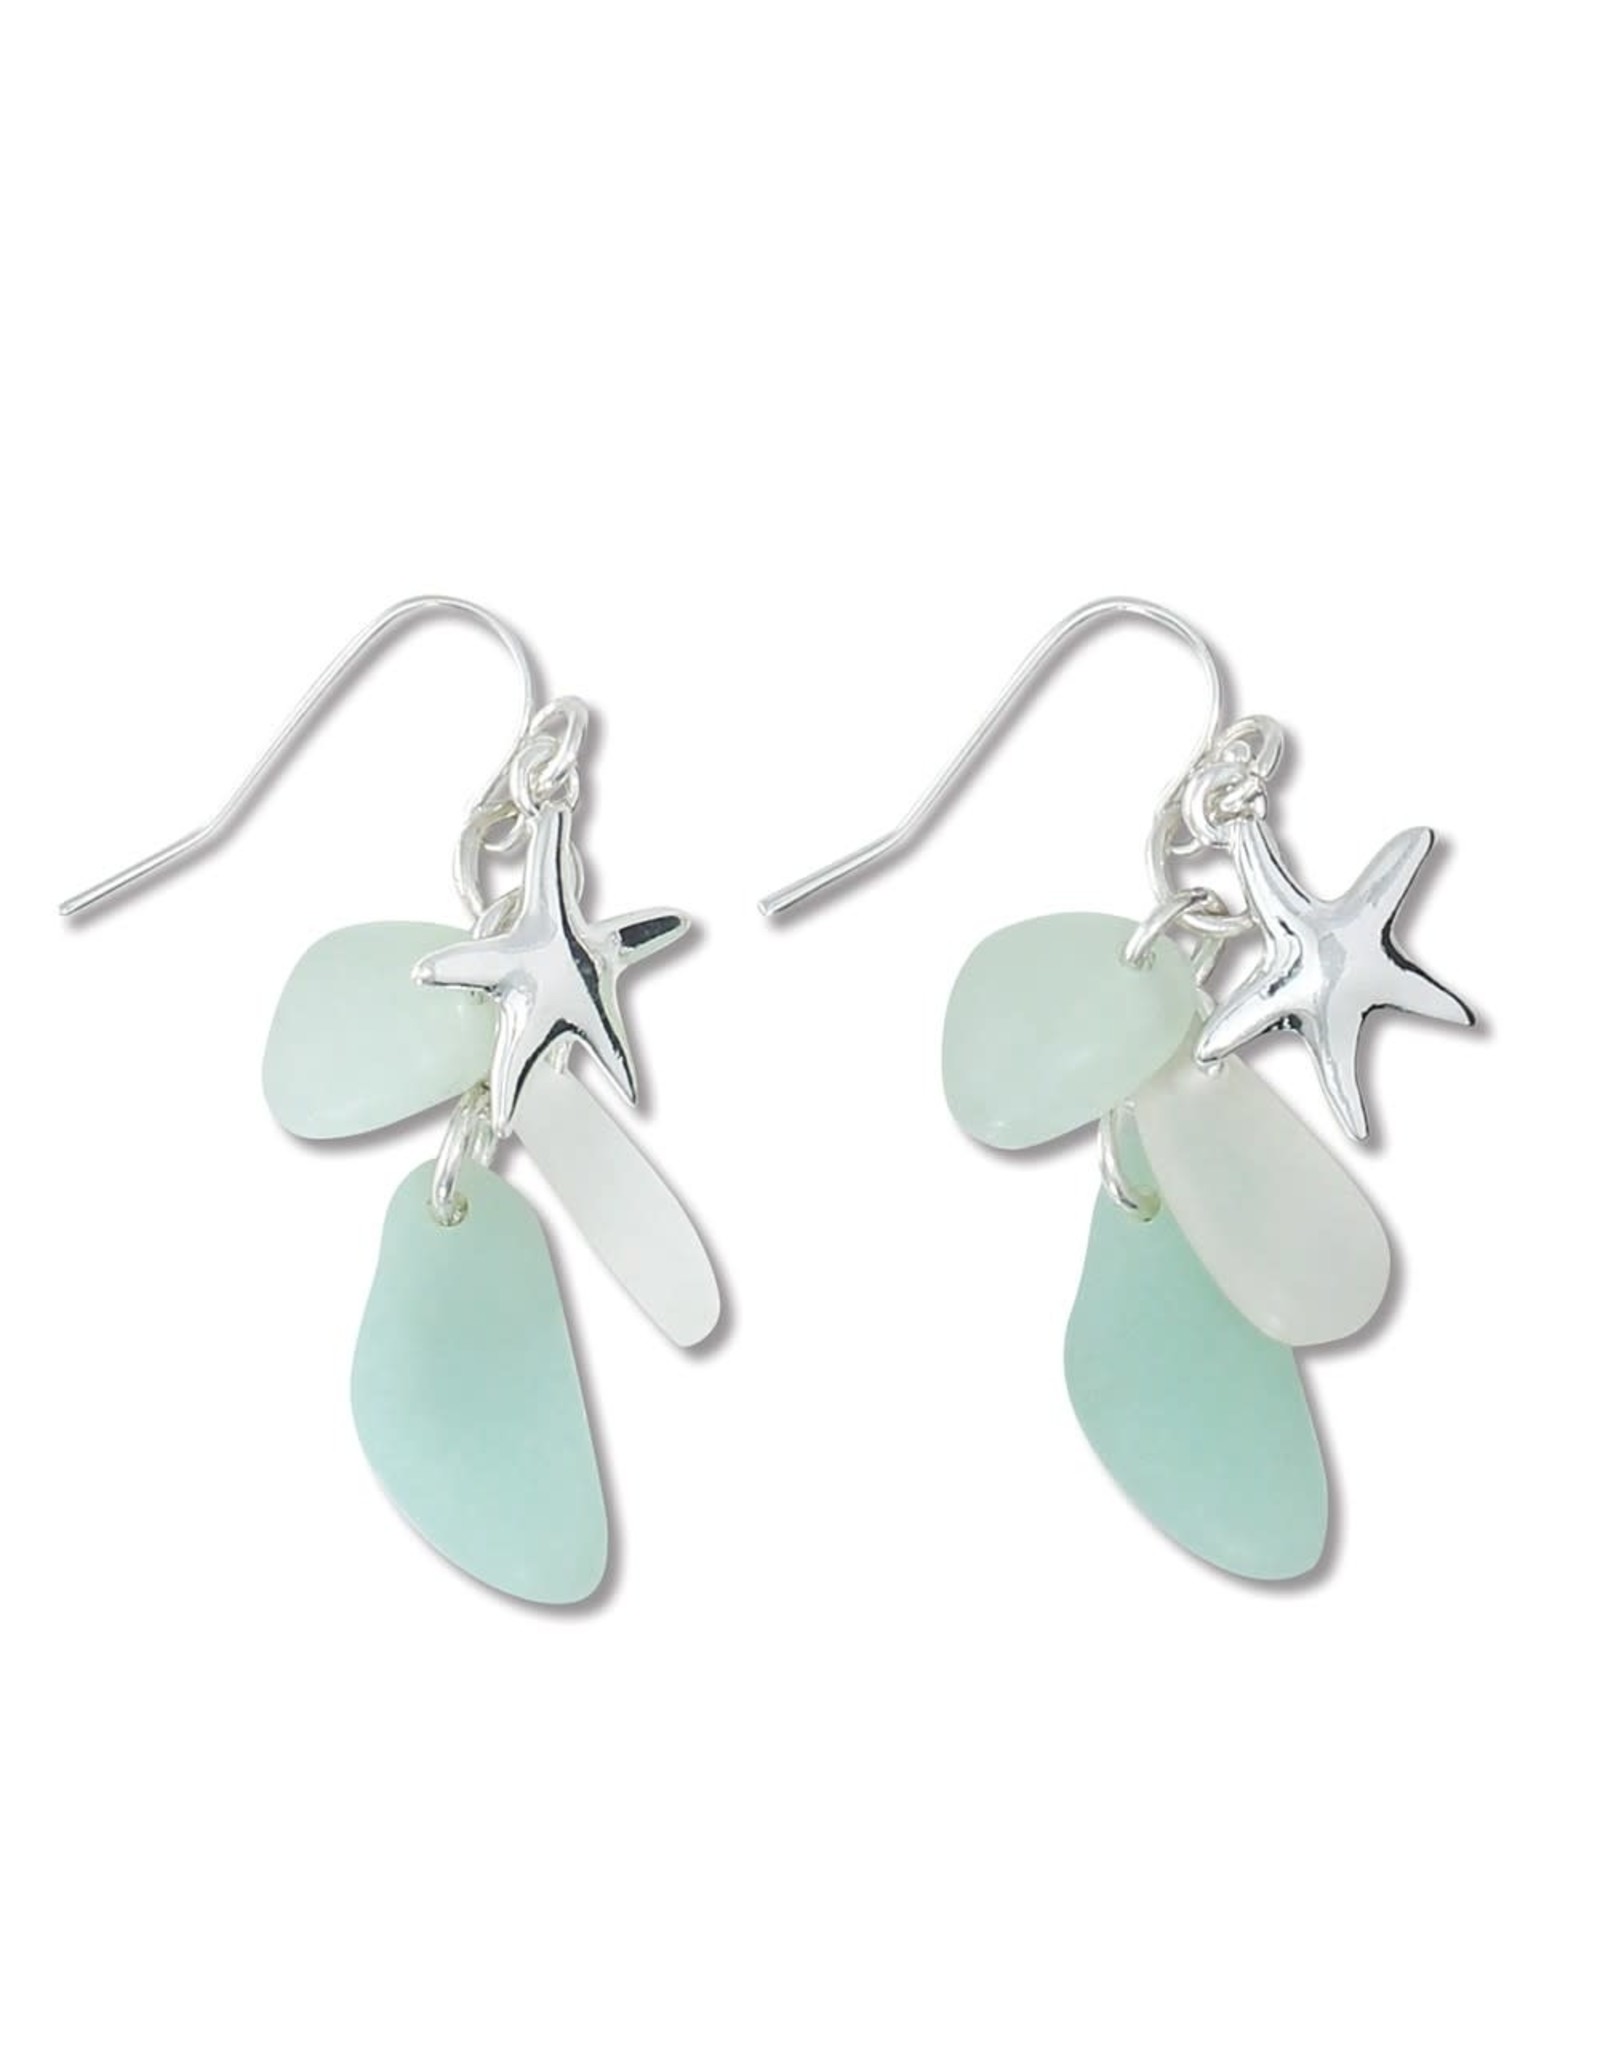 Periwinkle by Barlow Earrings Silver Starfish W Sea Mint Glass Drops